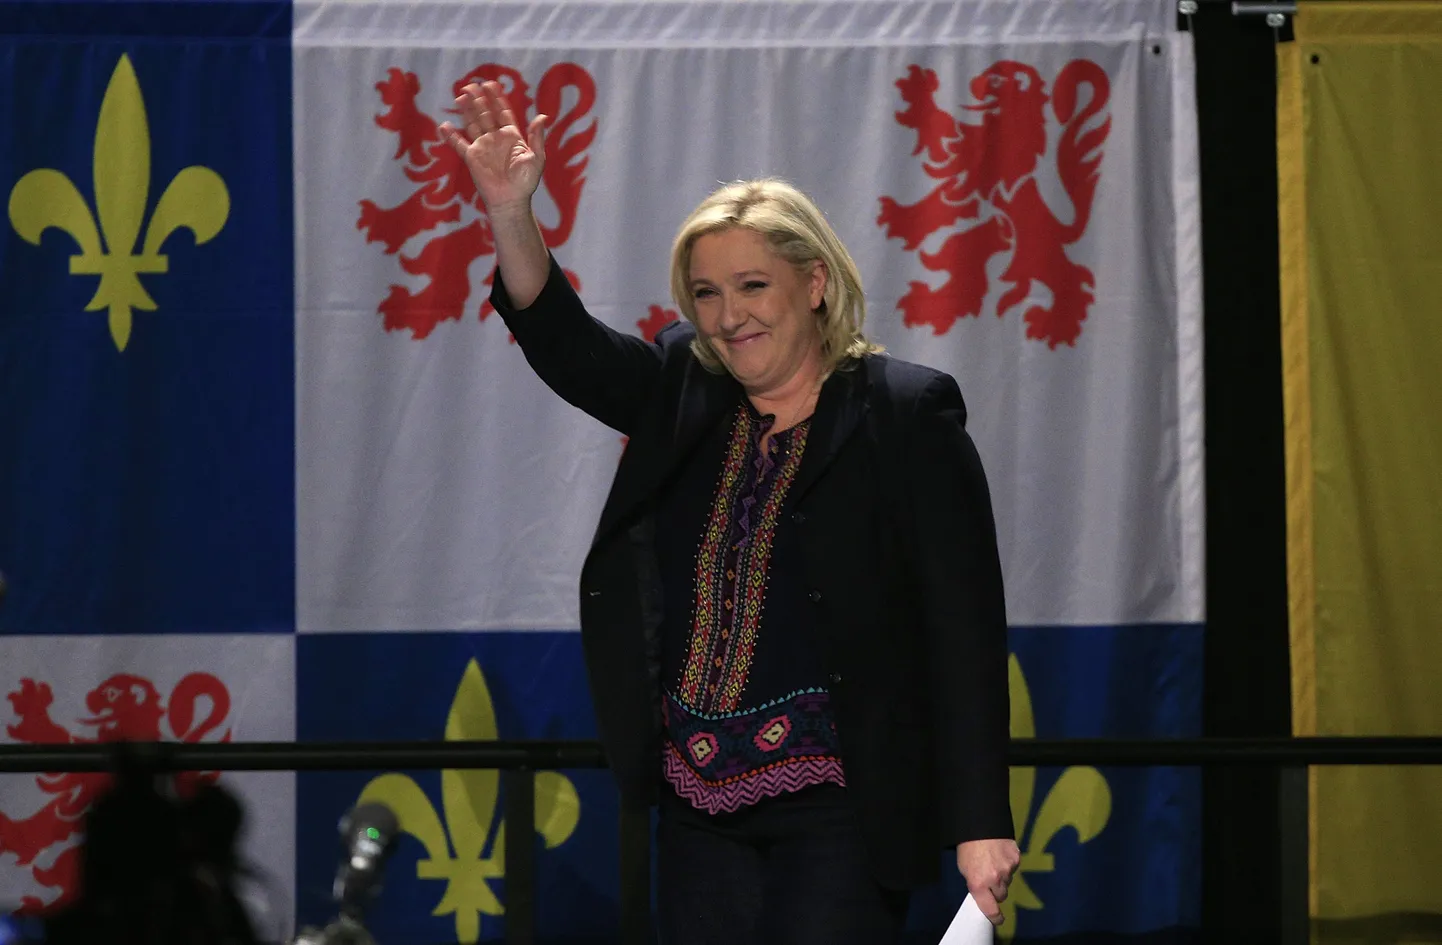 Prantsuse paremäärmusliku Rahvusrinde juht Marine Le Pen